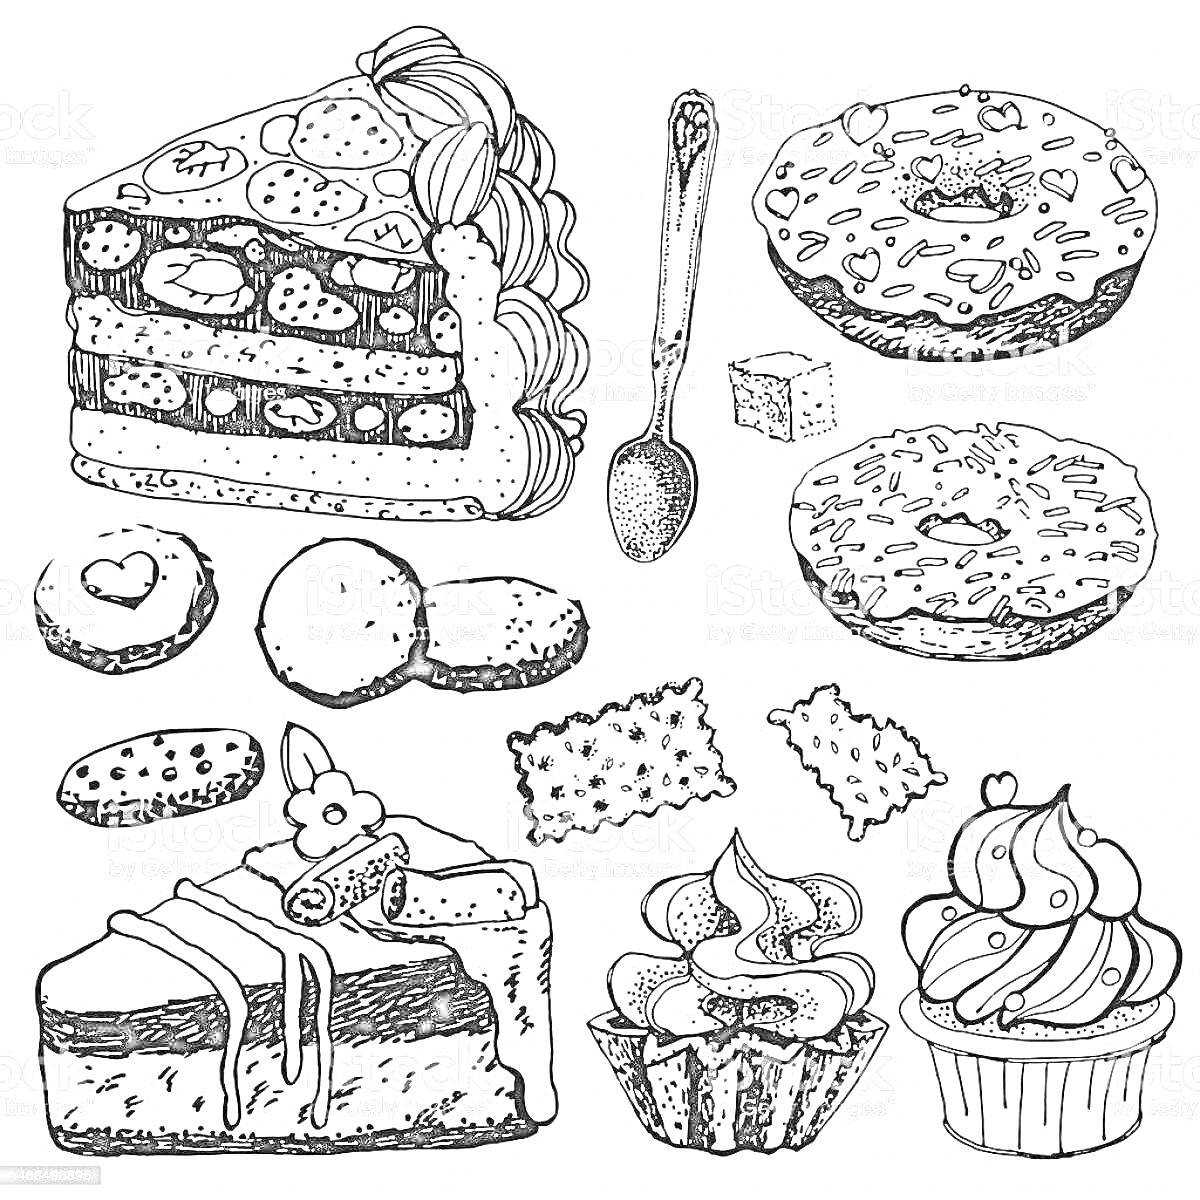 Разнообразие кондитерских изделий (кусок слоеного пирога с ягодами и кремом, посыпанный кондитерской присыпкой пончик с сердечками, пончик с полосками глазури, мармелад, печенье, кусок торта с кремом, украшенный пирожок с начинкой, маффин с кремом).